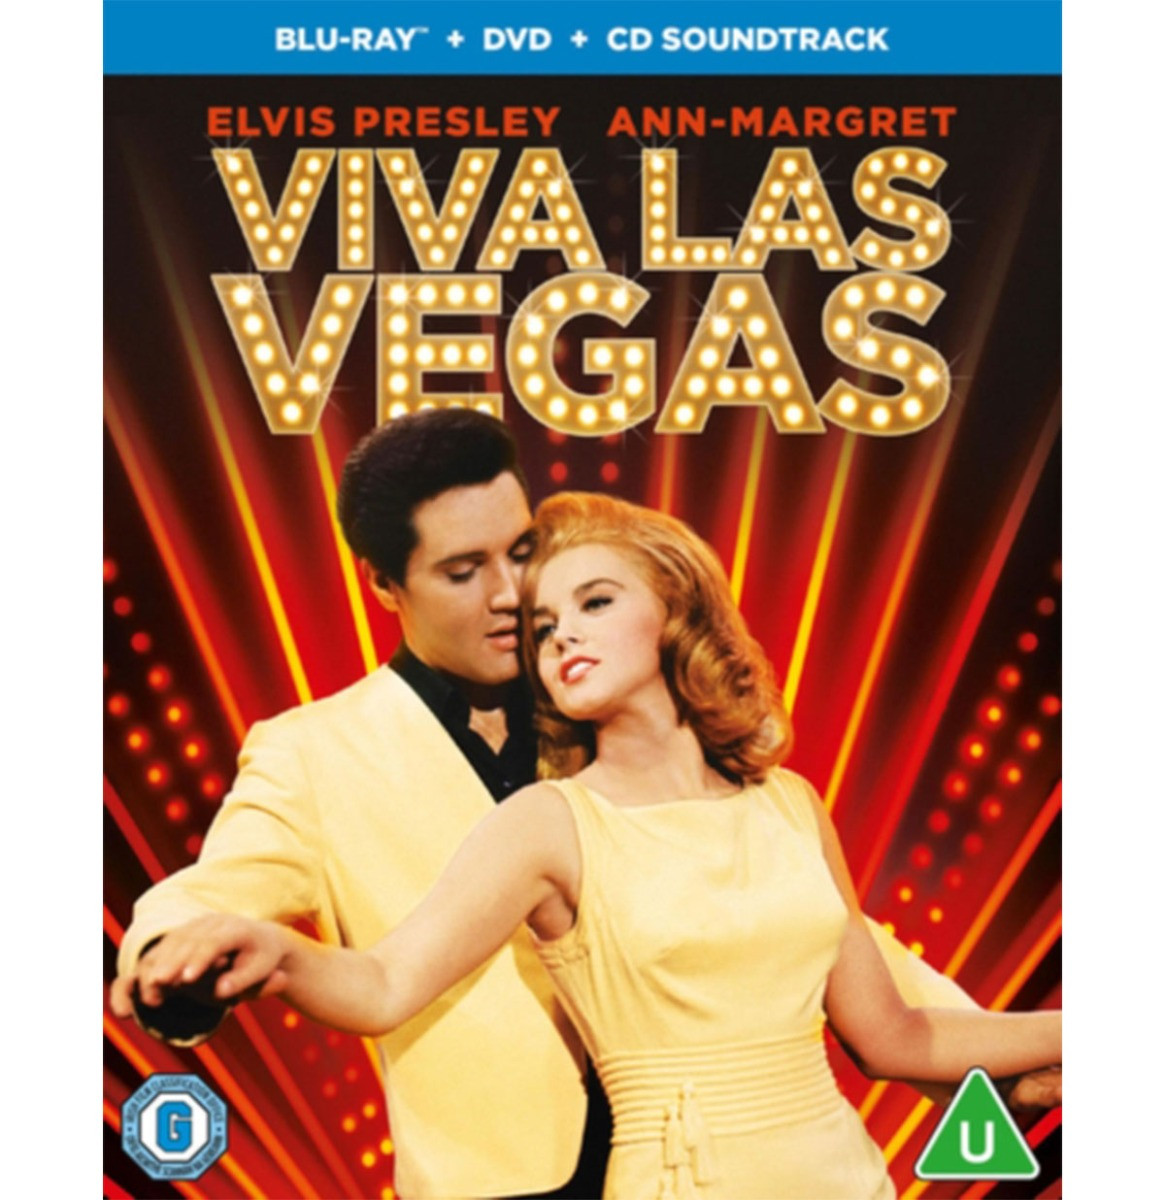 Elvis Presley in Viva Las Vegas (Blu-Ray + DVD + CD Soundtrack)